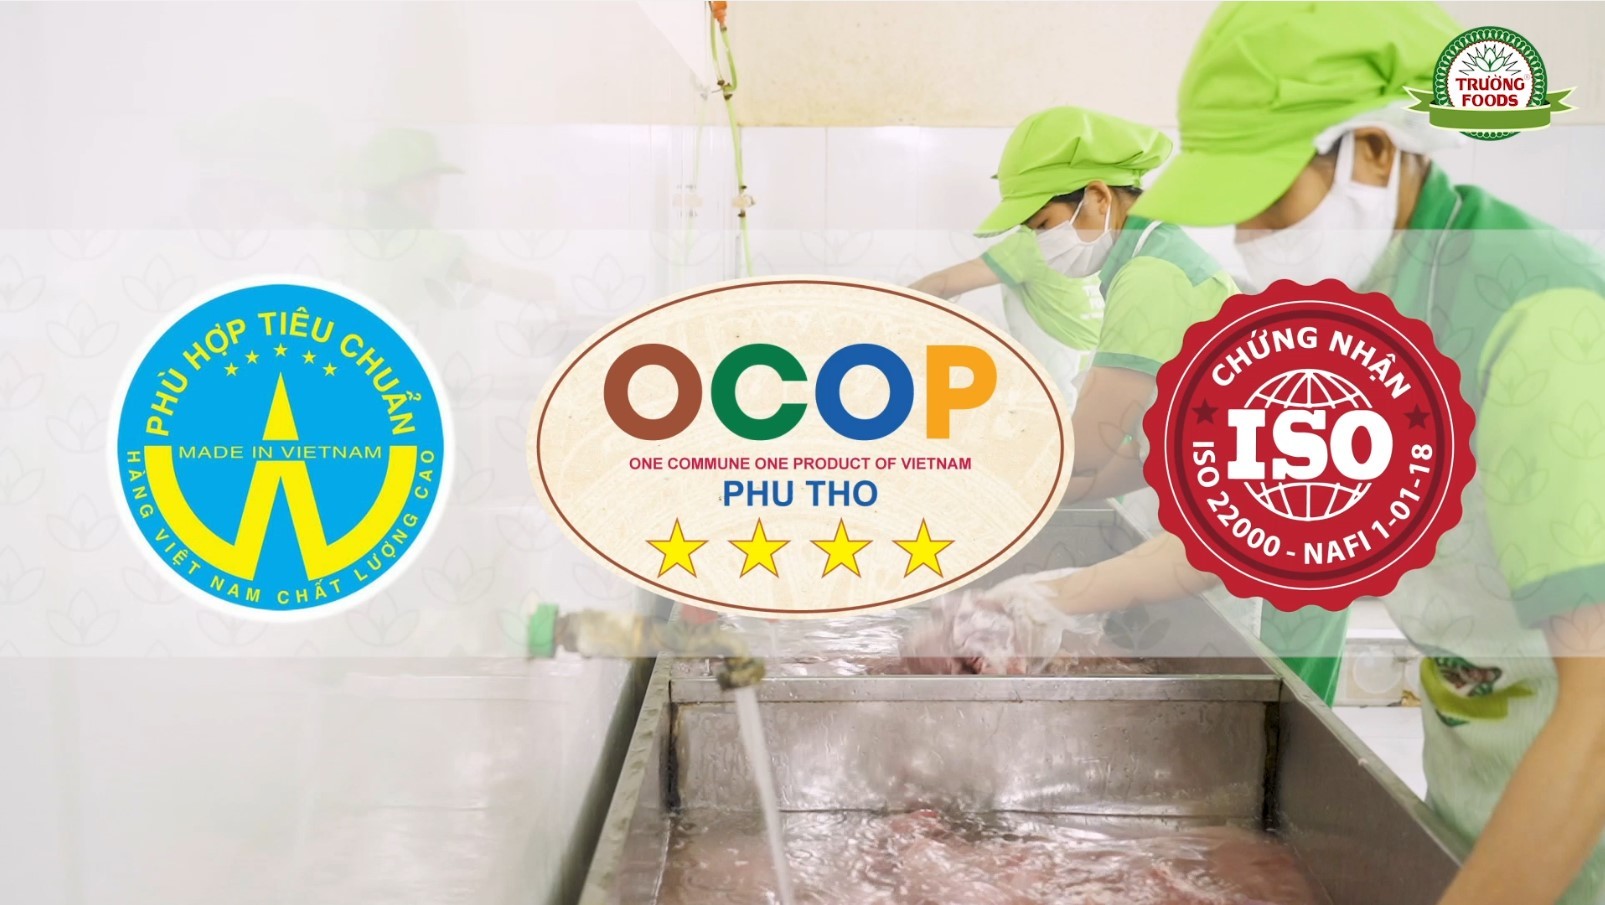 Trường Foods: Xứng tầm thương hiệu sản phẩm OCOP.